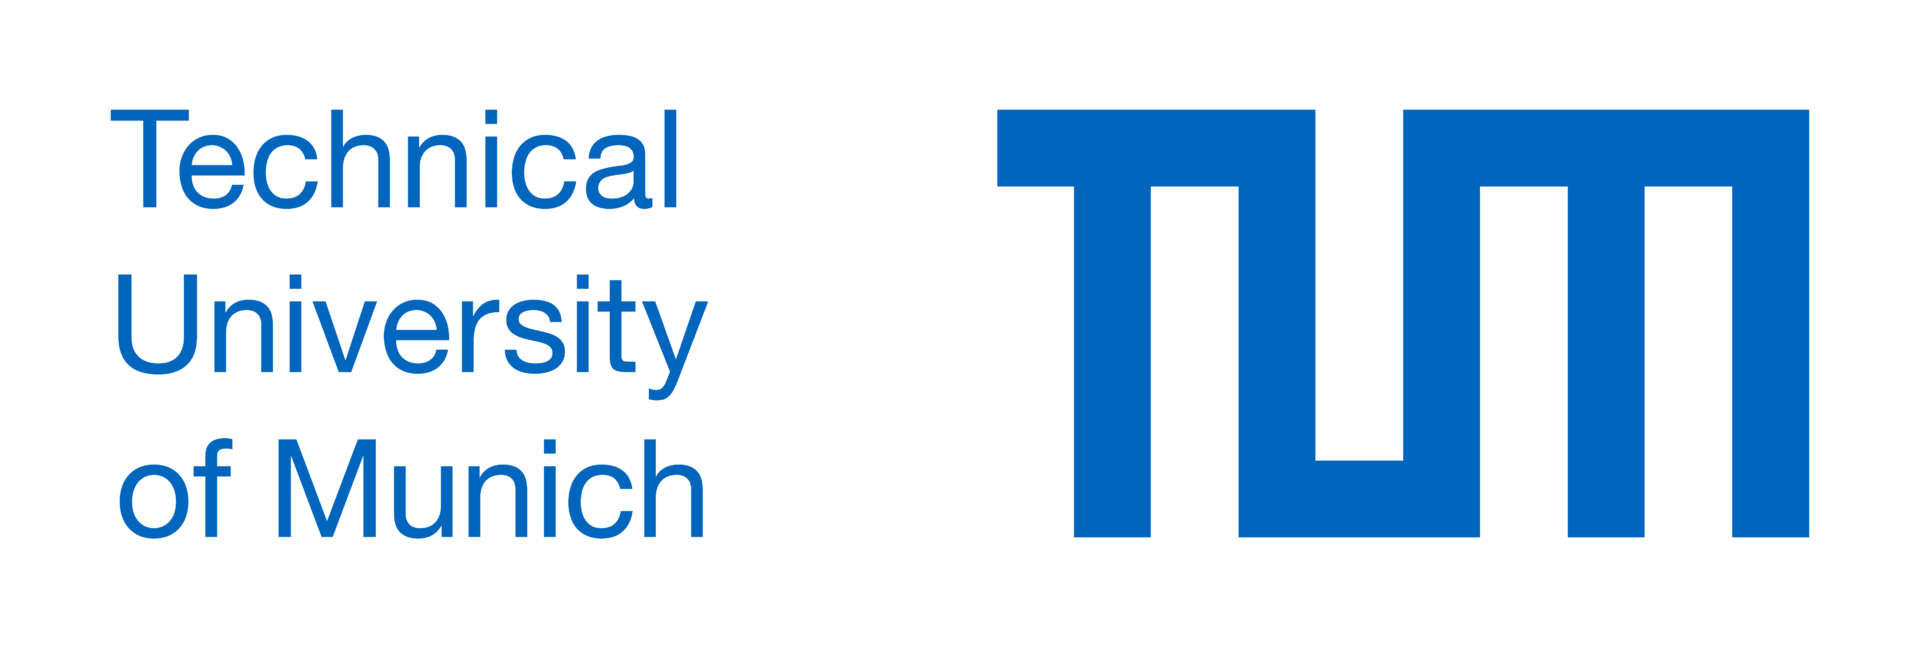 TUM_Logo